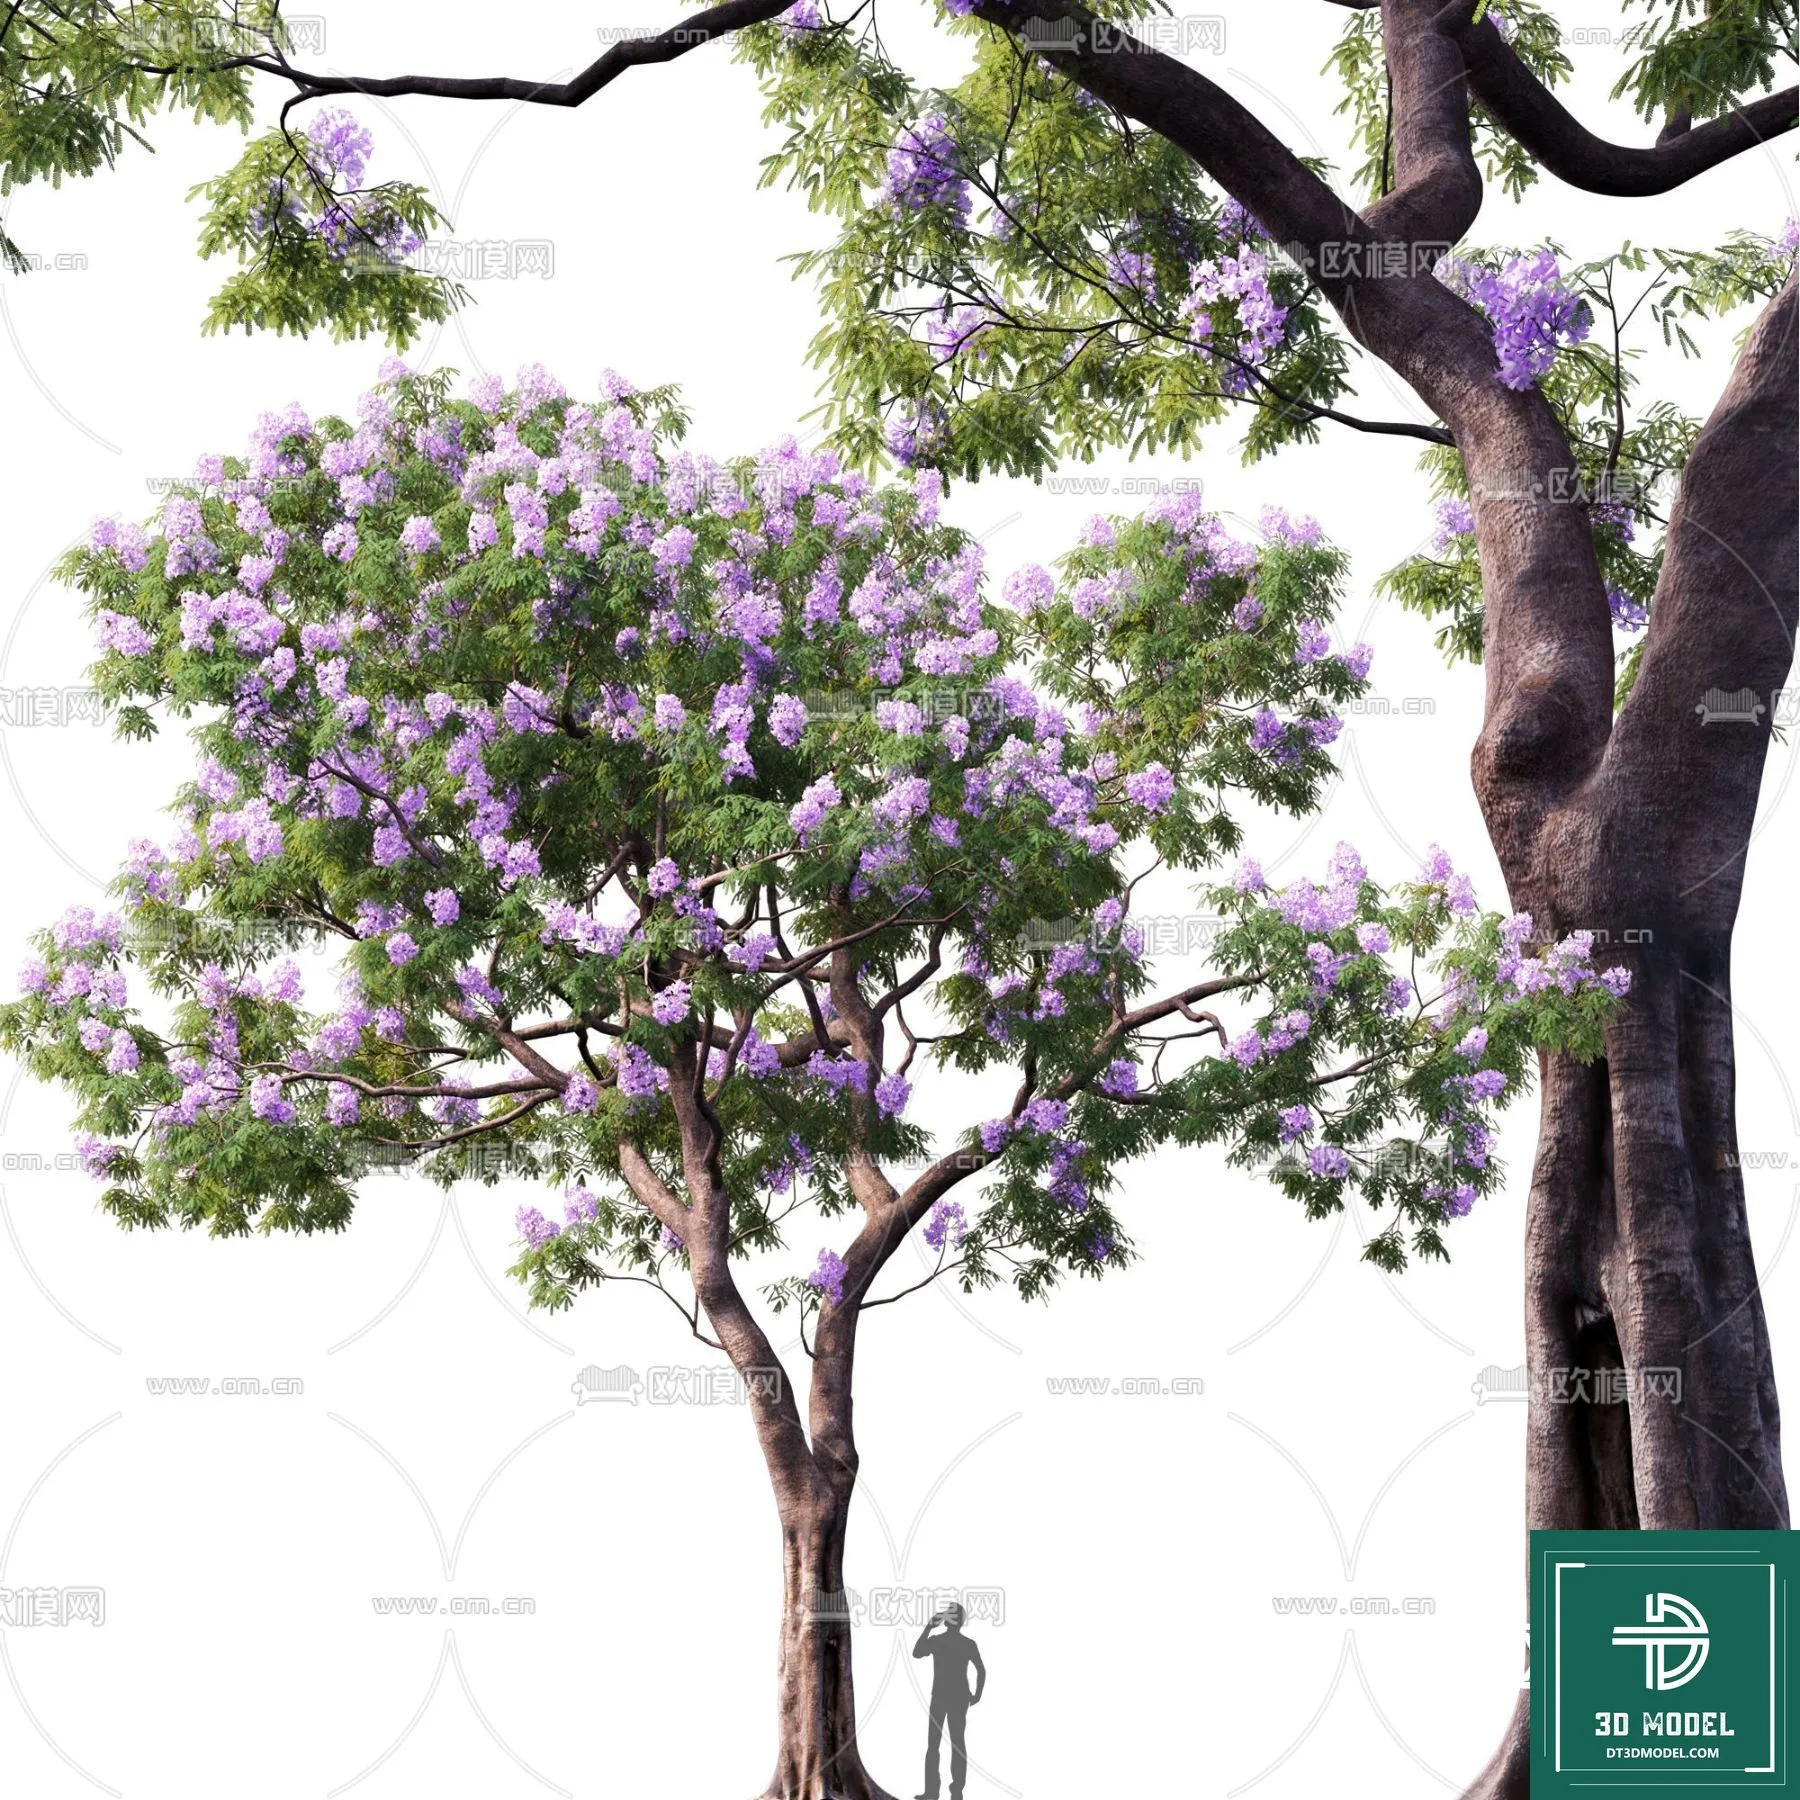 EXTERIOR – TREE – 3D MODELS – 236